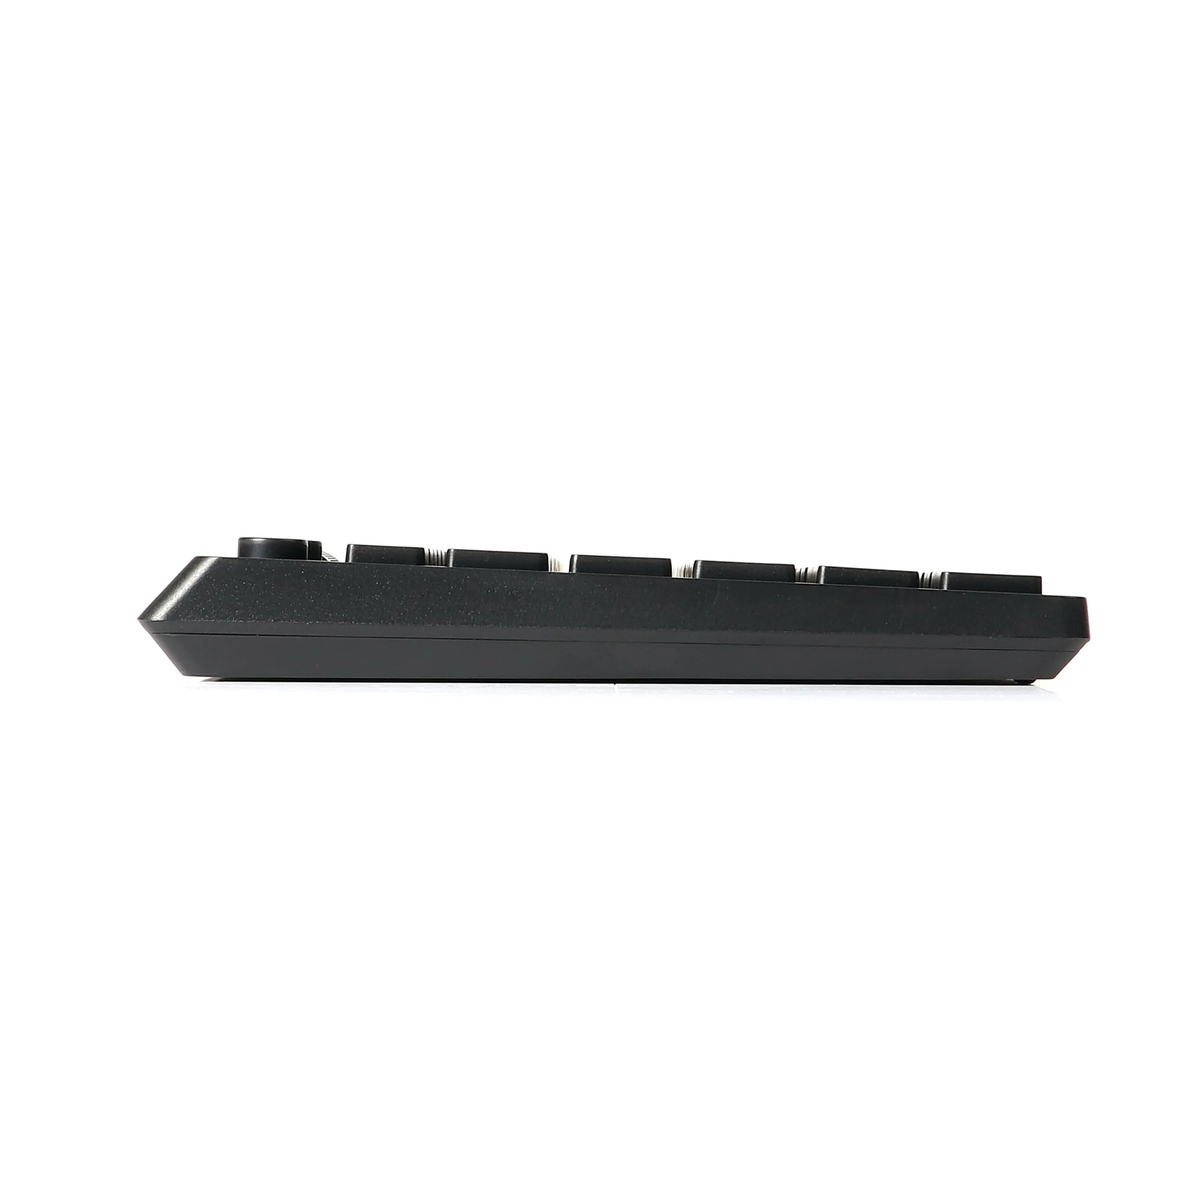 لوحة مفاتيح رابو لا سلكية مع تاتش باد - اللون أسود